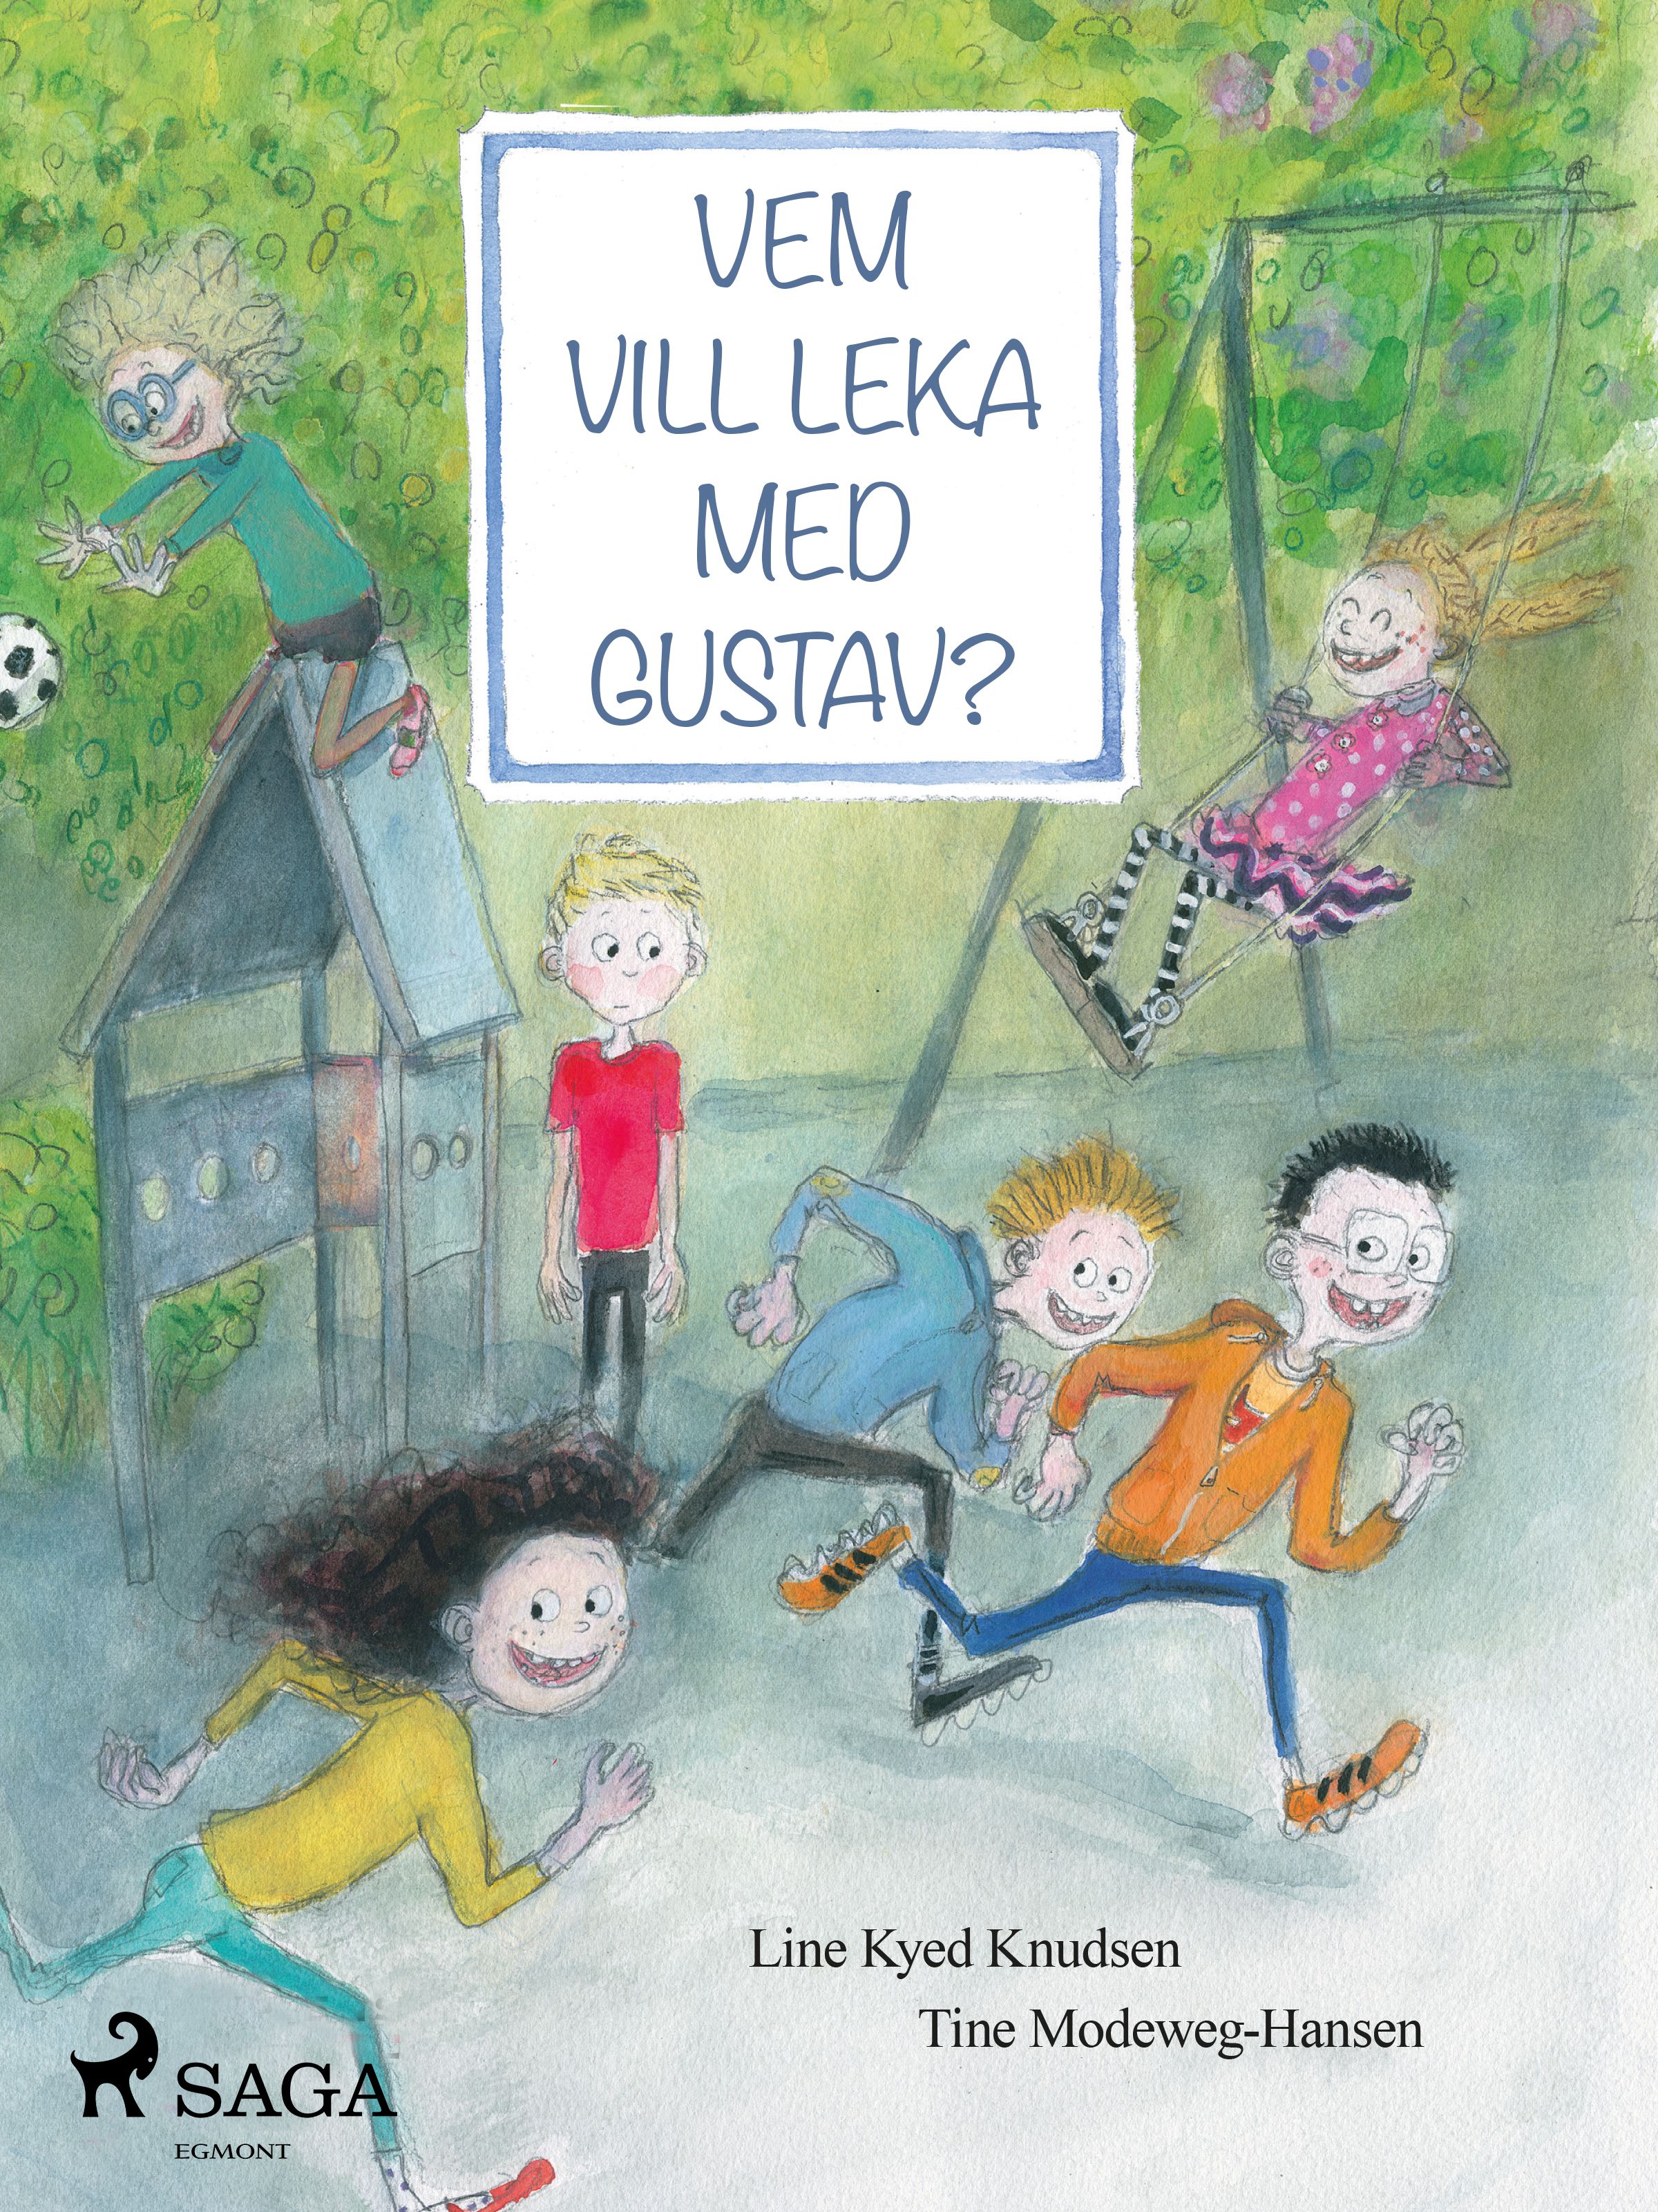 Vem vill leka med Gustav?, e-bok av Line Kyed Knudsen